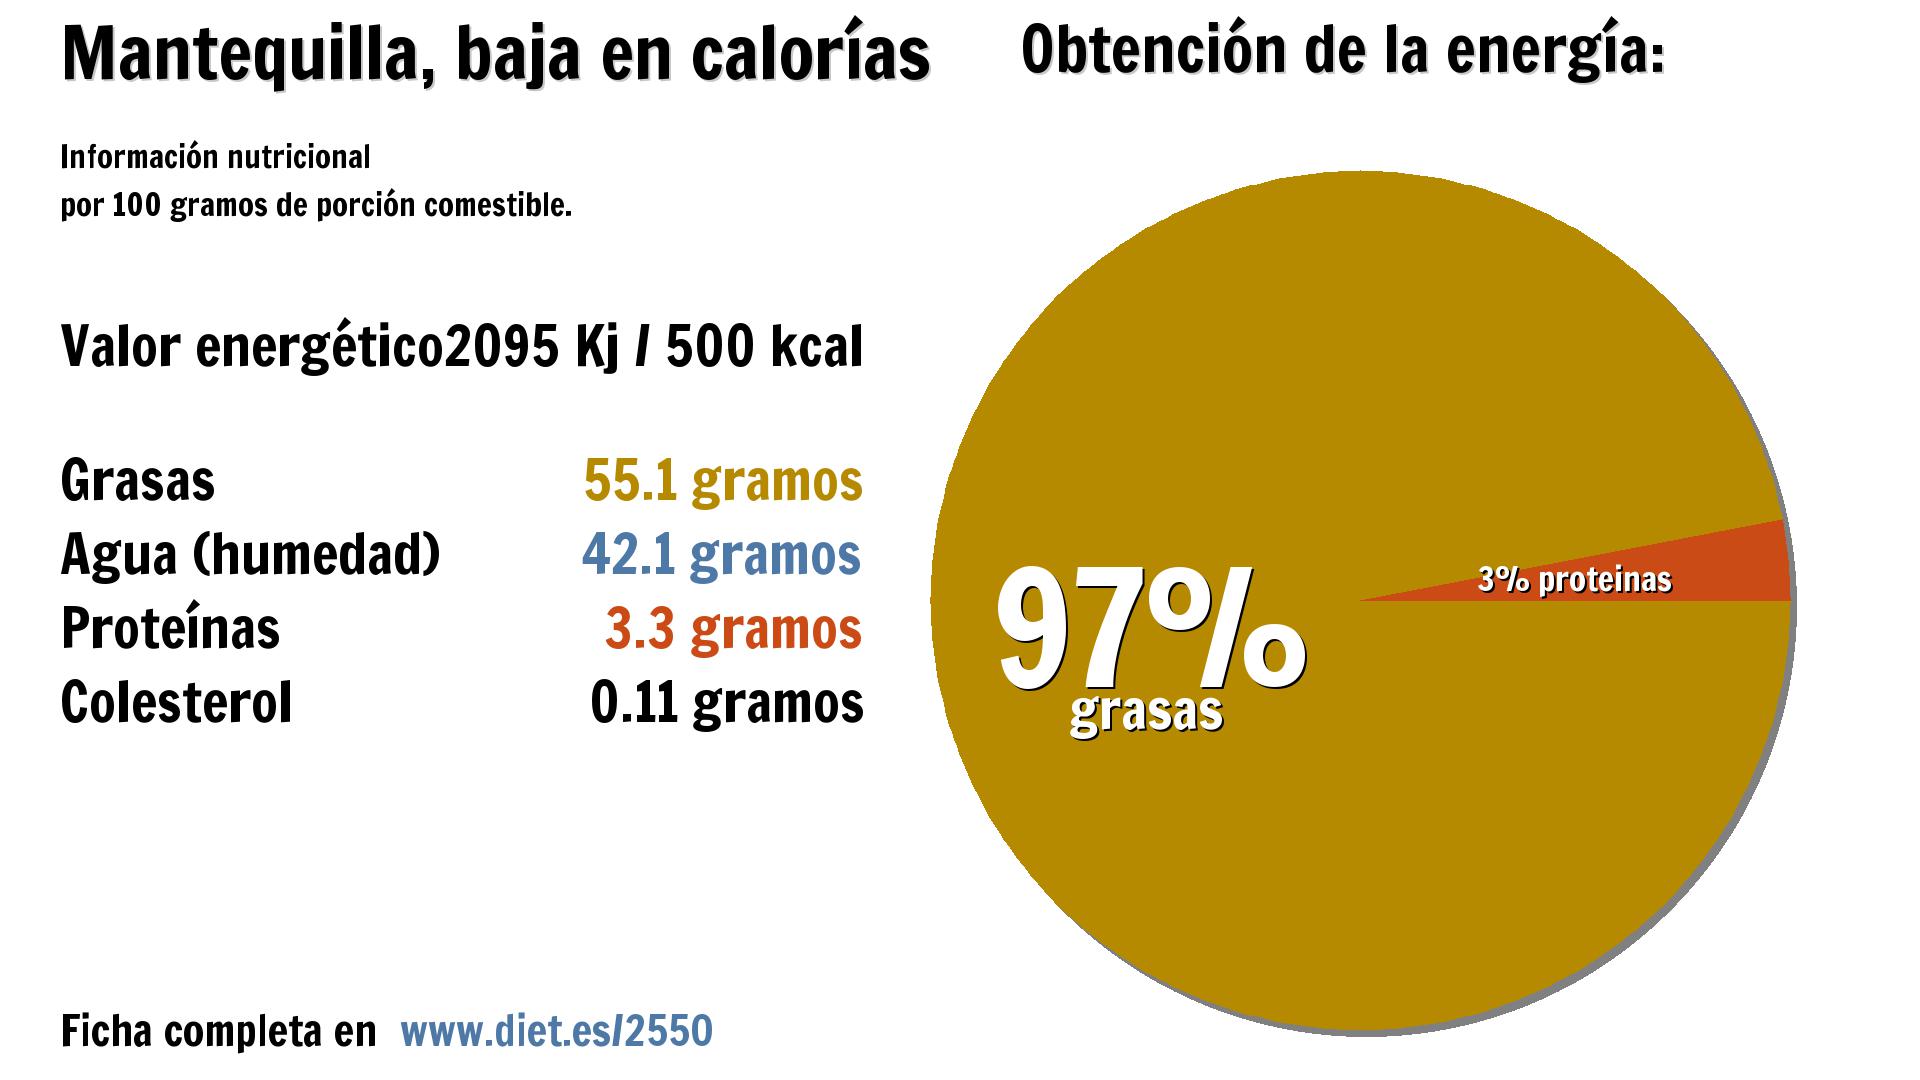 Mantequilla, baja en calorías: energía 2095 Kj, grasas 55 g., agua 42 g. y proteínas 3 g.